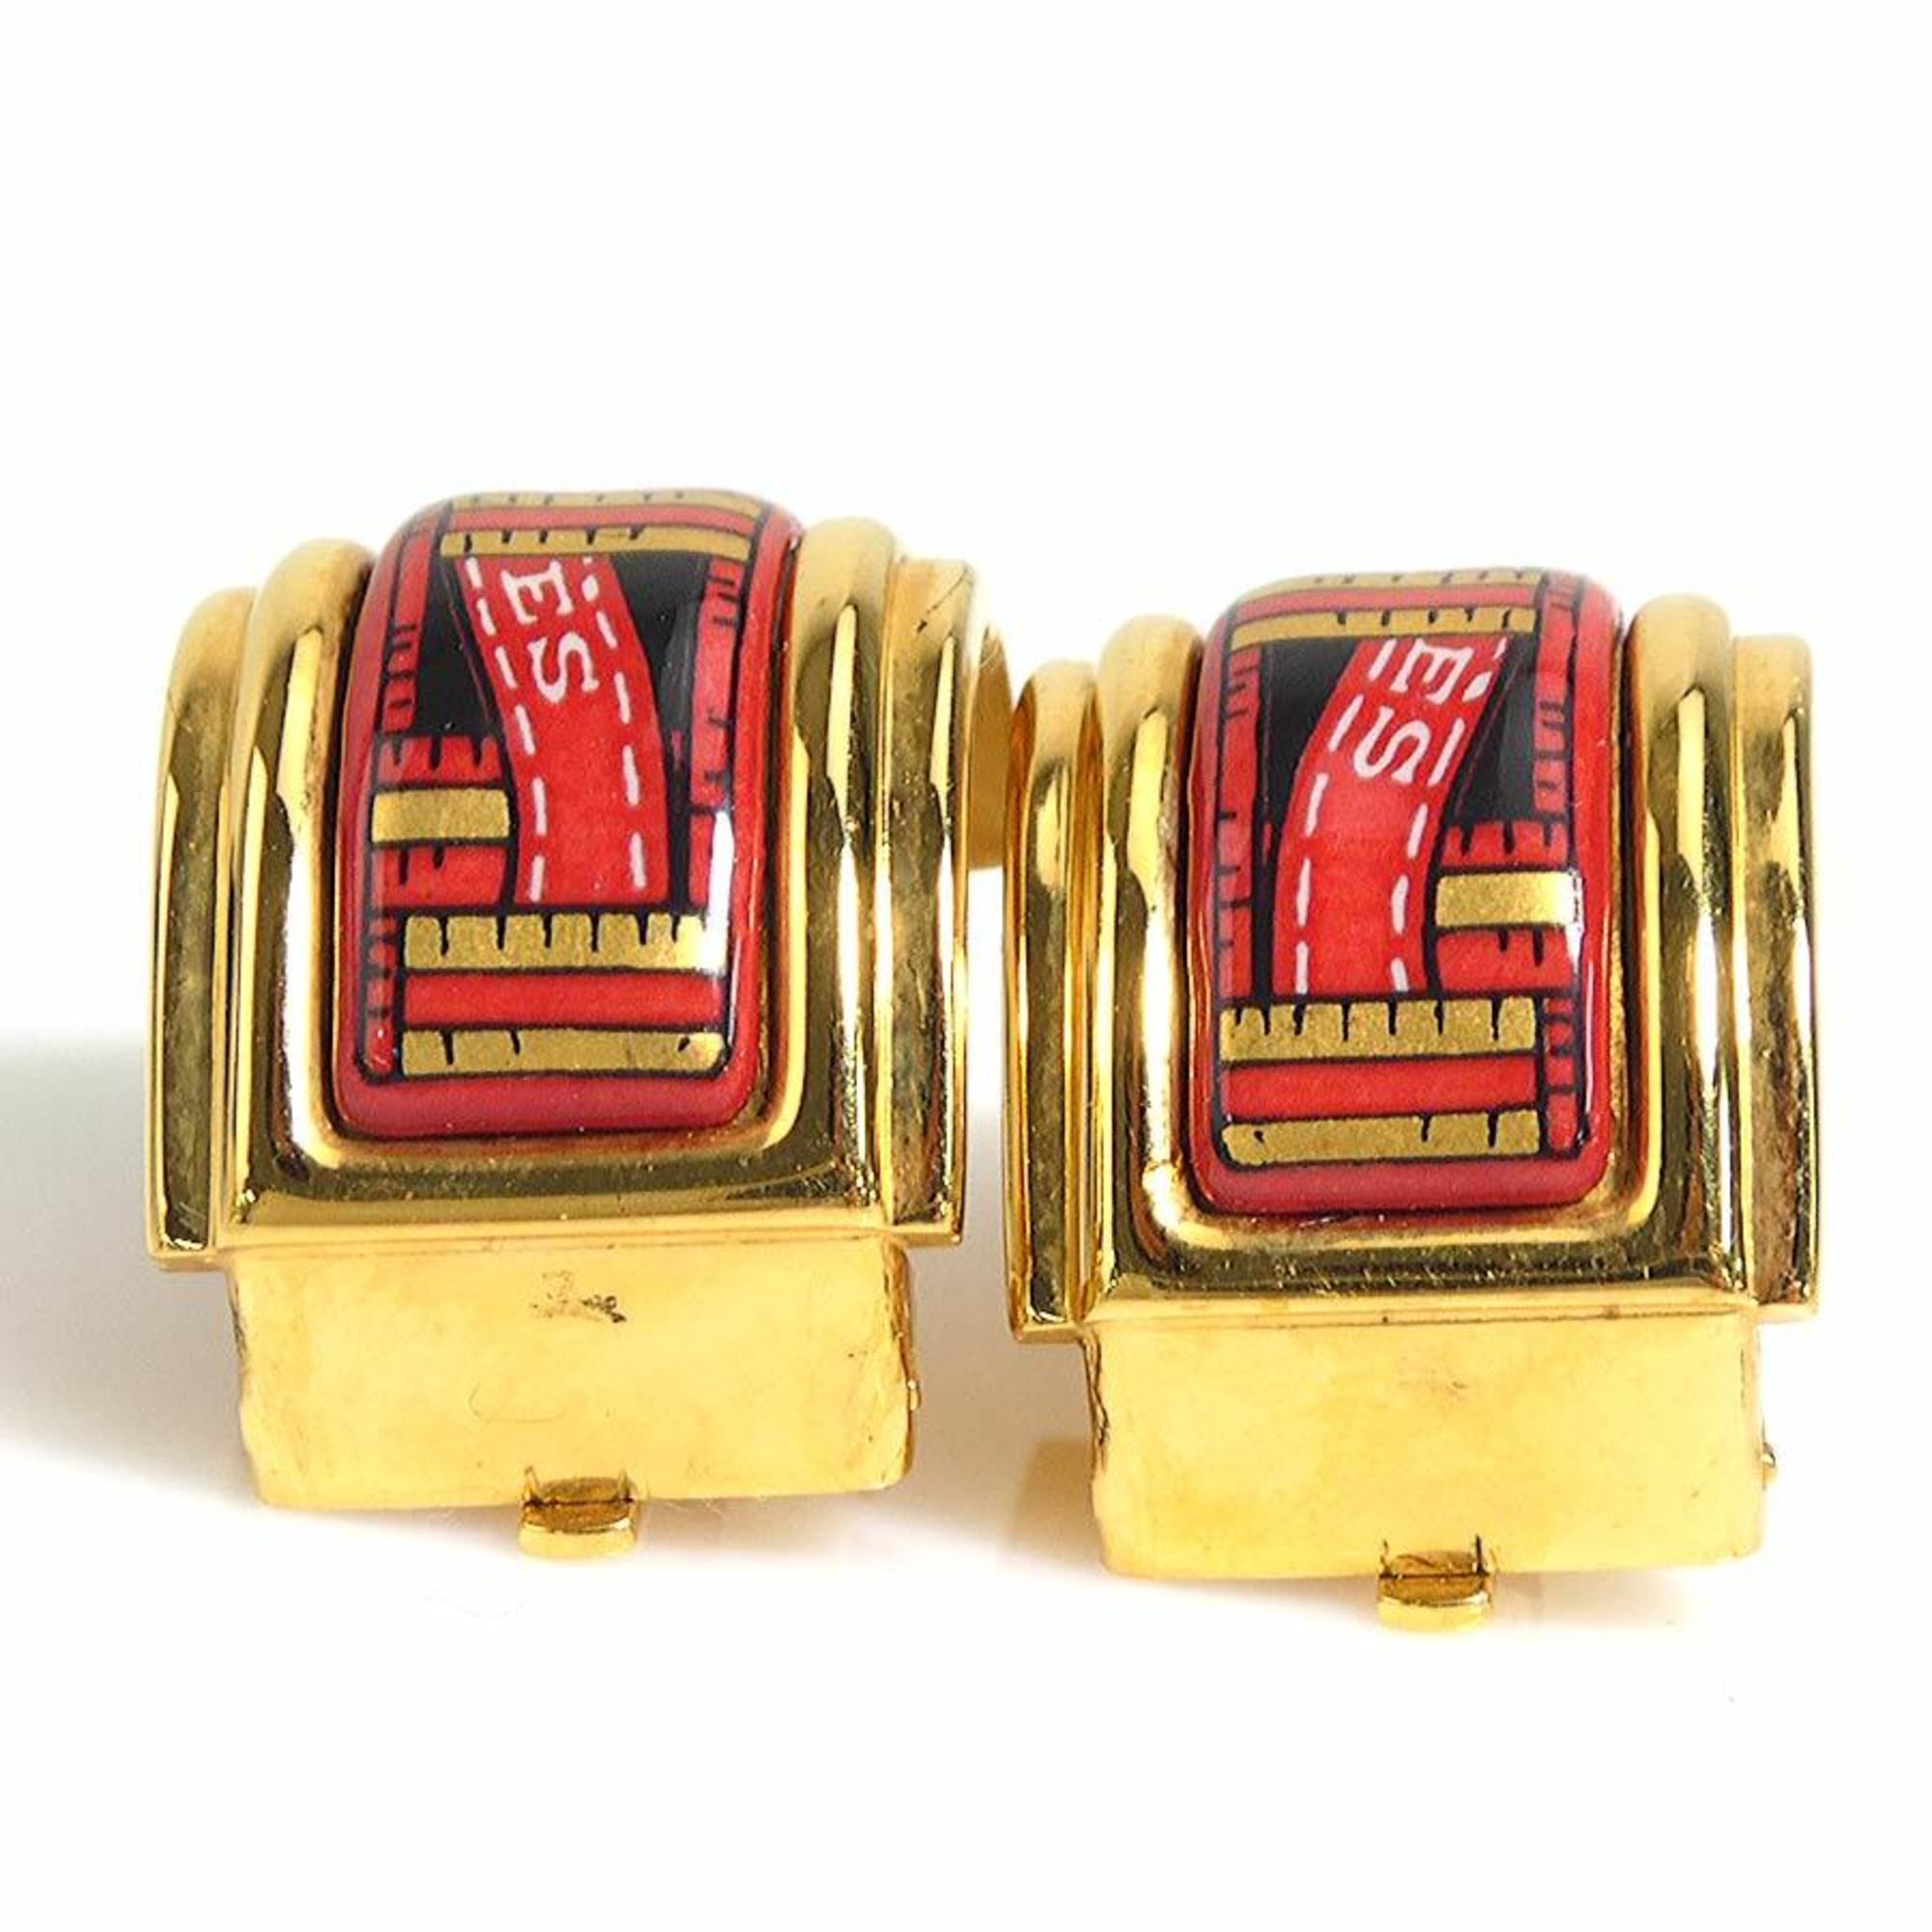 Hermes HERMES Earrings Cloisonne Metal/Enamel Gold/Red/Black Women's e58536g